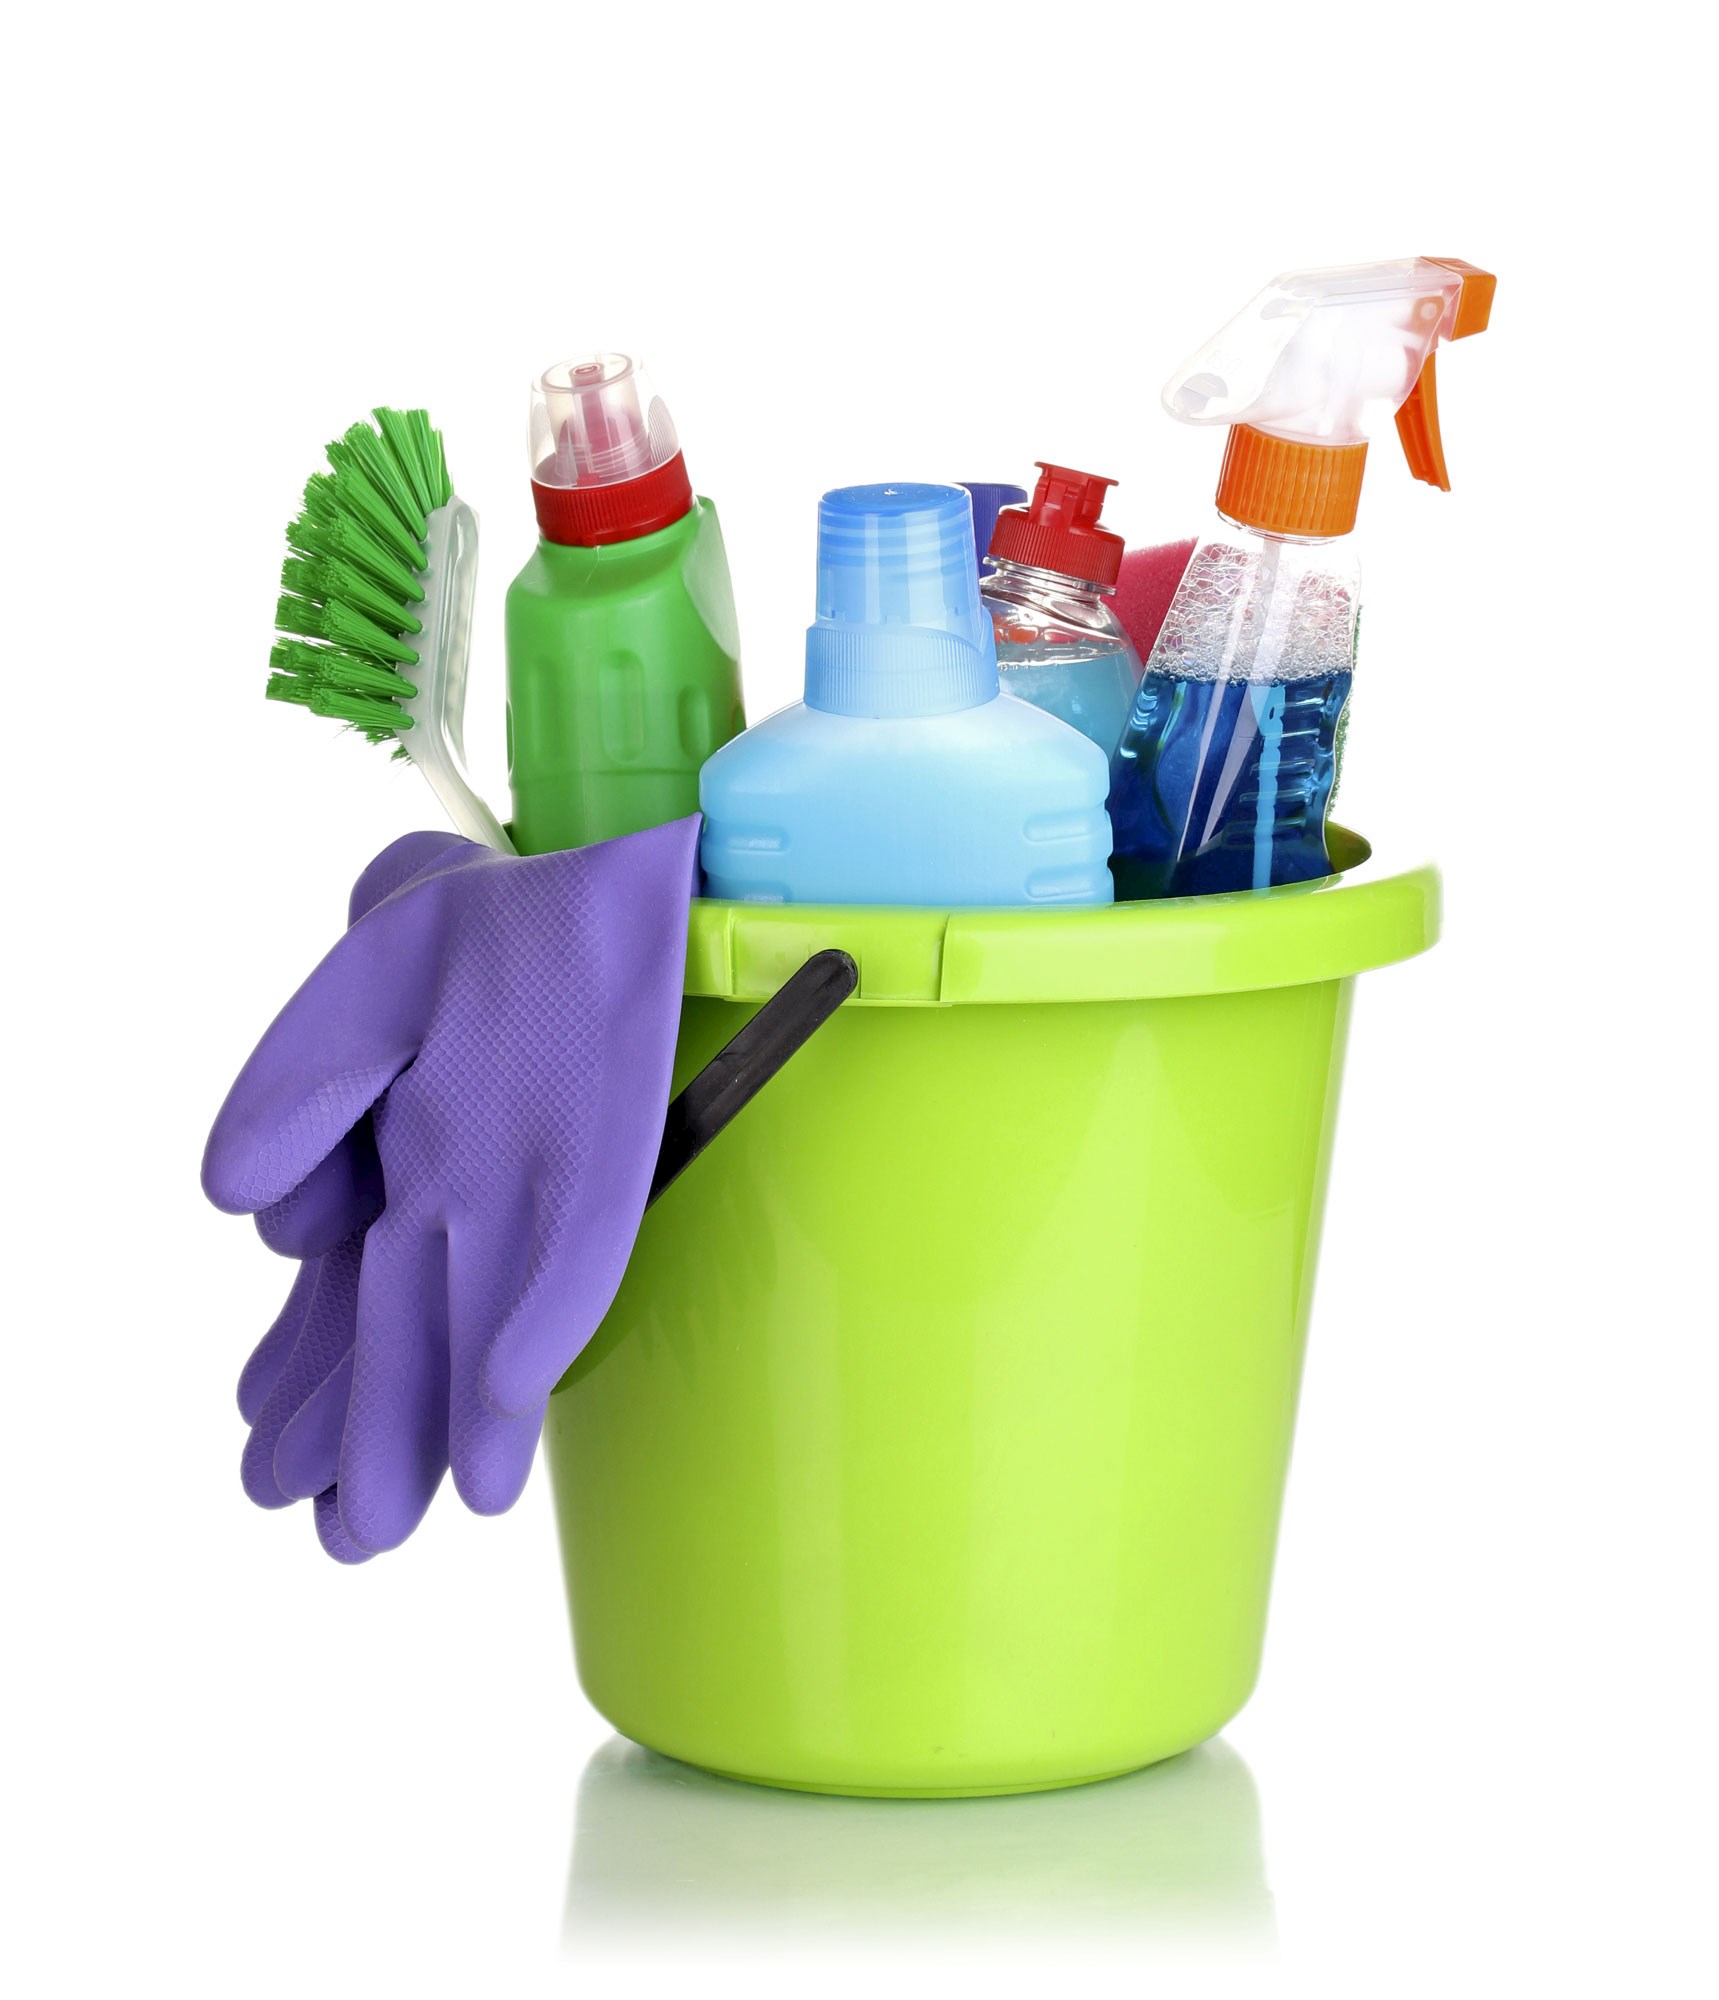 Man sieht einen hellgrünen Plastik-Kübel. Darin sind verschiedene Putzmittel, eine Bürste und violette Gummi-Handschuhe.